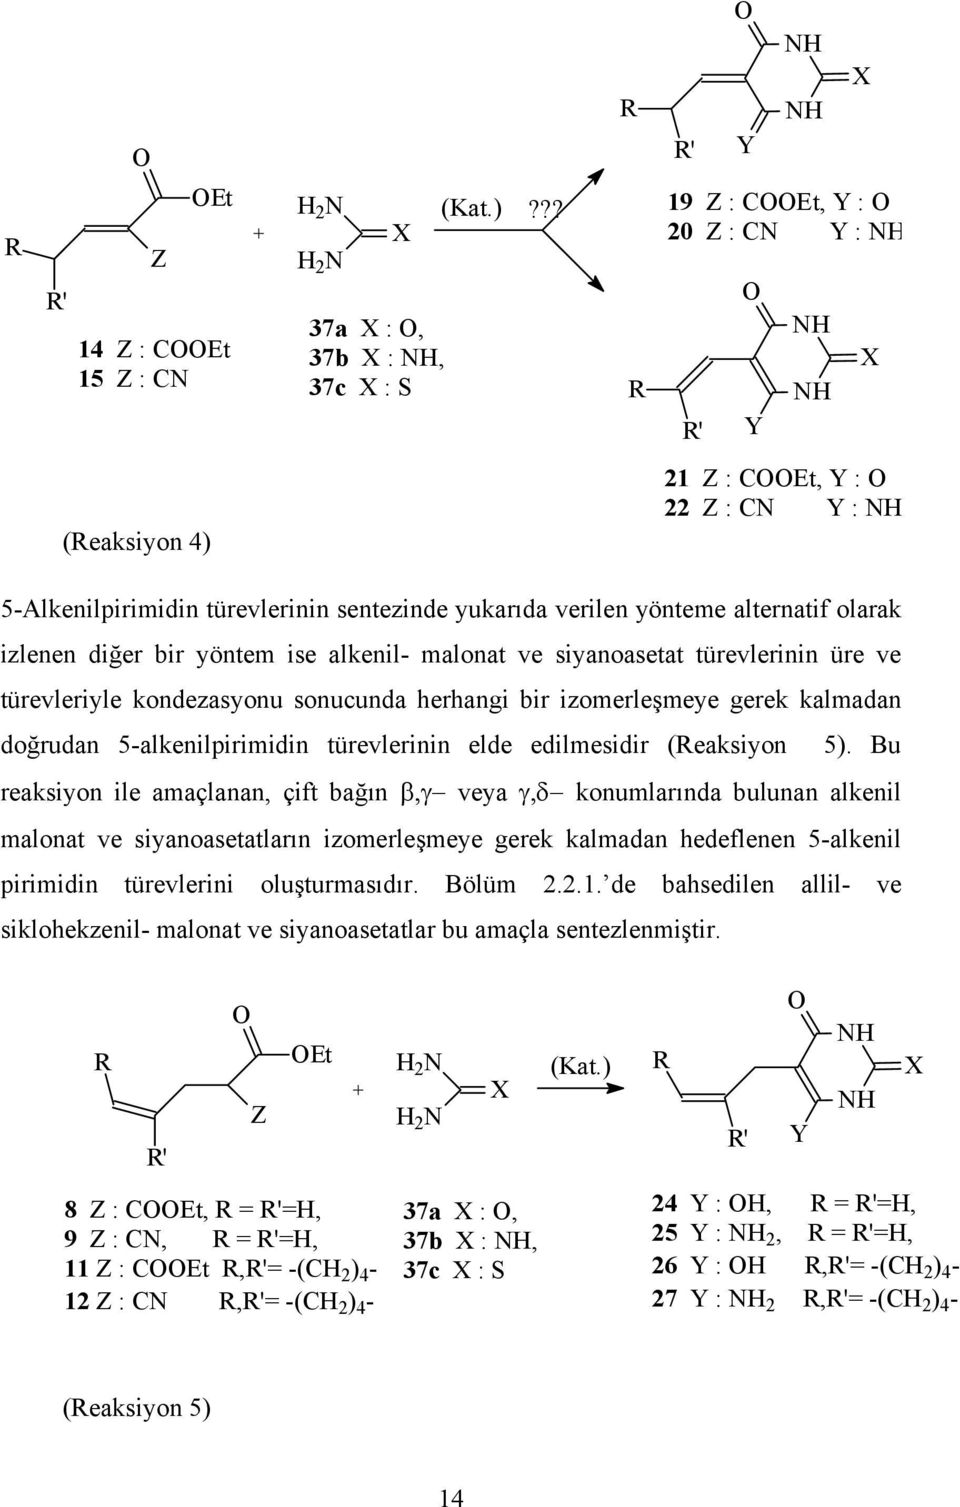 yöntem ise alkenil- malonat ve siyanoasetat türevlerinin üre ve türevleriyle kondezasyonu sonucunda herhangi bir izomerleşmeye gerek kalmadan doğrudan 5-alkenilpirimidin türevlerinin elde edilmesidir